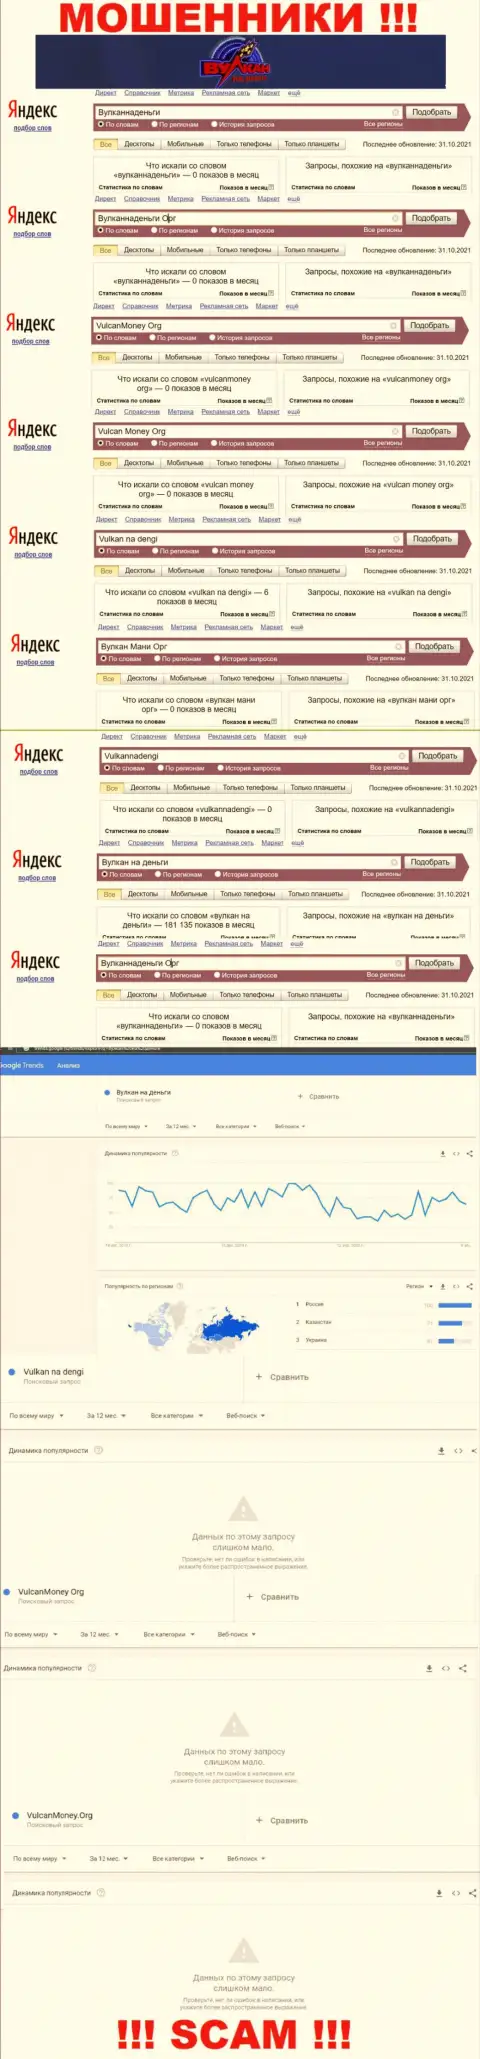 Детальный анализ суммарного числа онлайн запросов в поисковиках интернет сети по обманщикам Vulkan na dengi